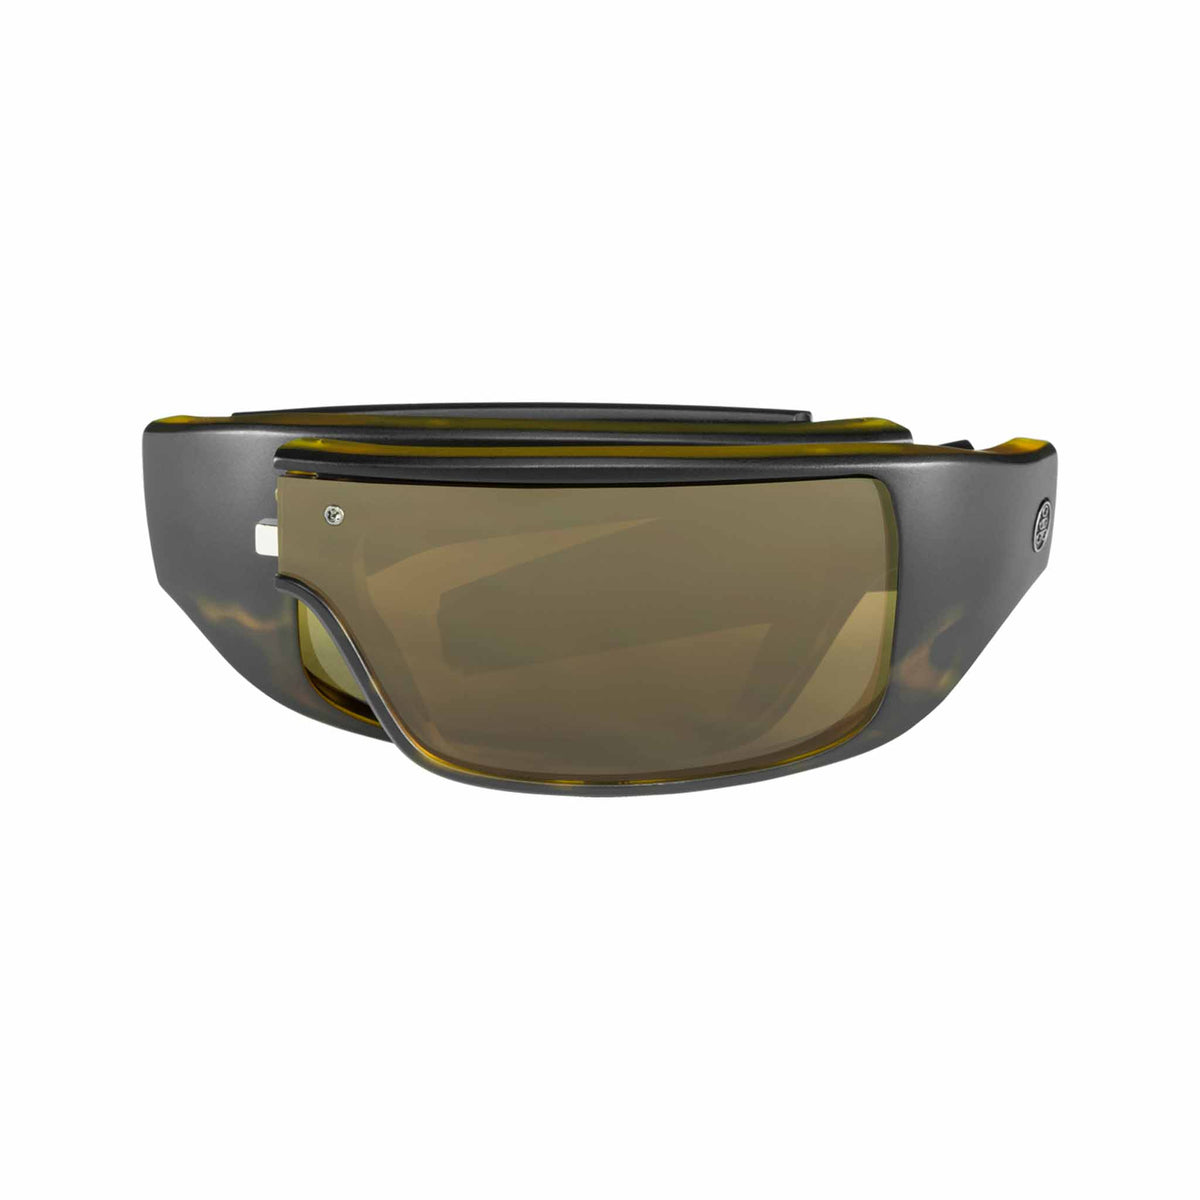 Popticals, Premium Compact Sunglasses, PopGear, 010050-AUNS, Standard Sunglasses, Matte Black Tortoise, Brown Lenses, Compact View